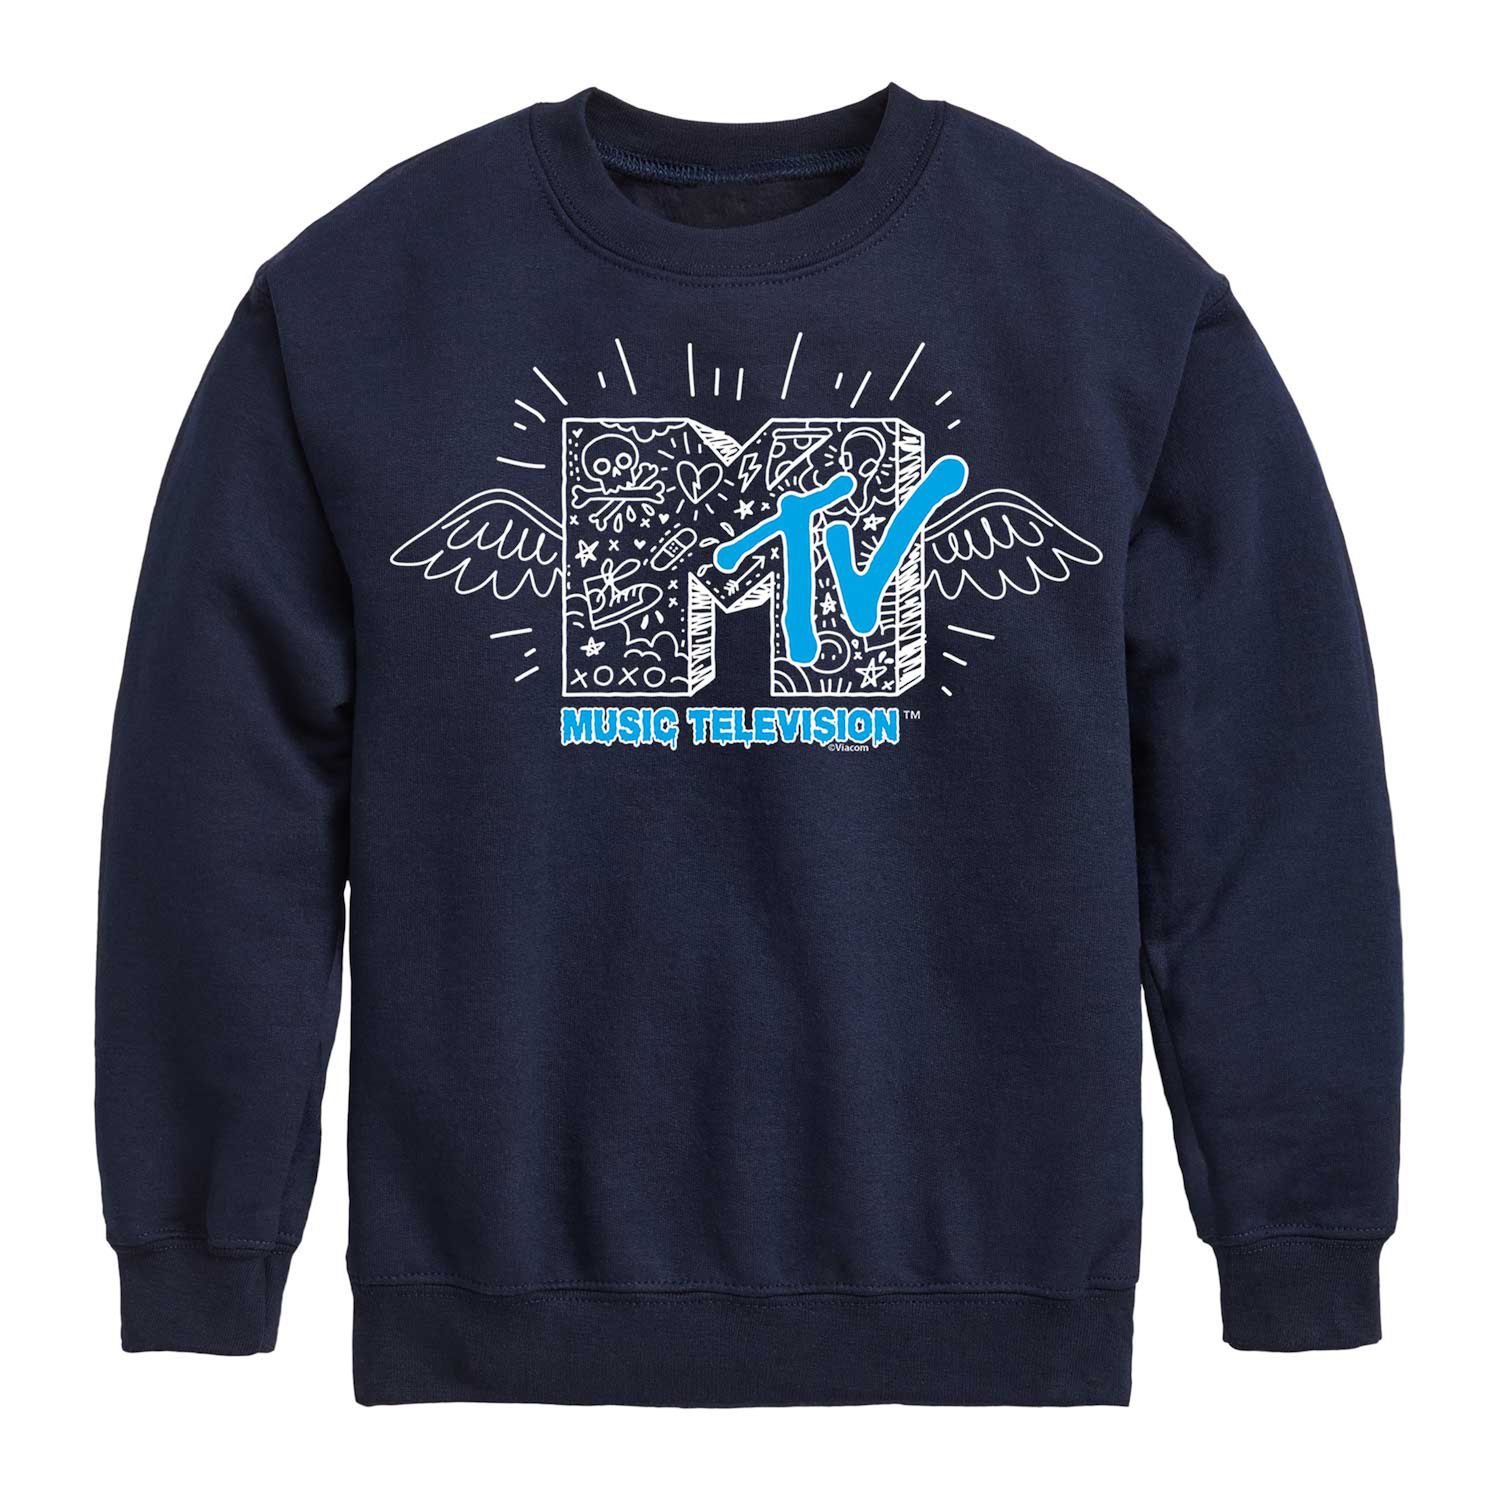 Толстовка с рисунком MTV и логотипом MTV для мальчиков 8–20 лет Licensed Character, синий футболка с логотипом mtv i want my mtv est 1981 для мальчиков 8–20 лет licensed character